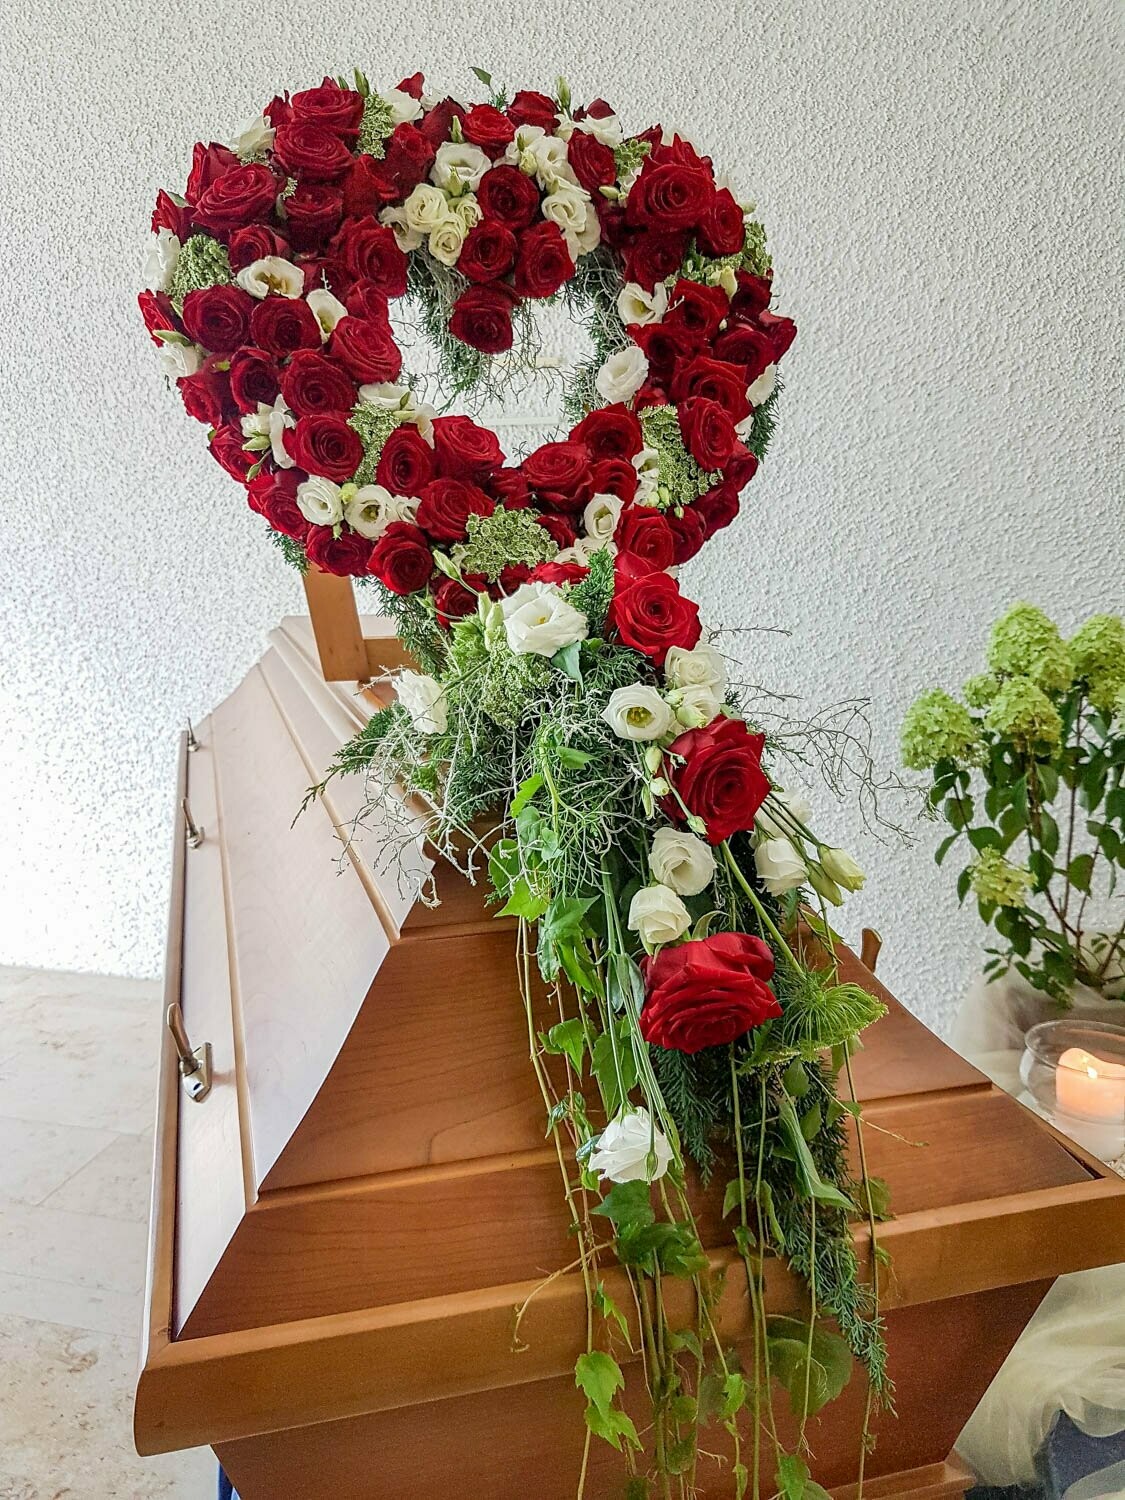 Sargschmuck - als aufgestelltes Herz mit roten Rosen und weißen Blumen